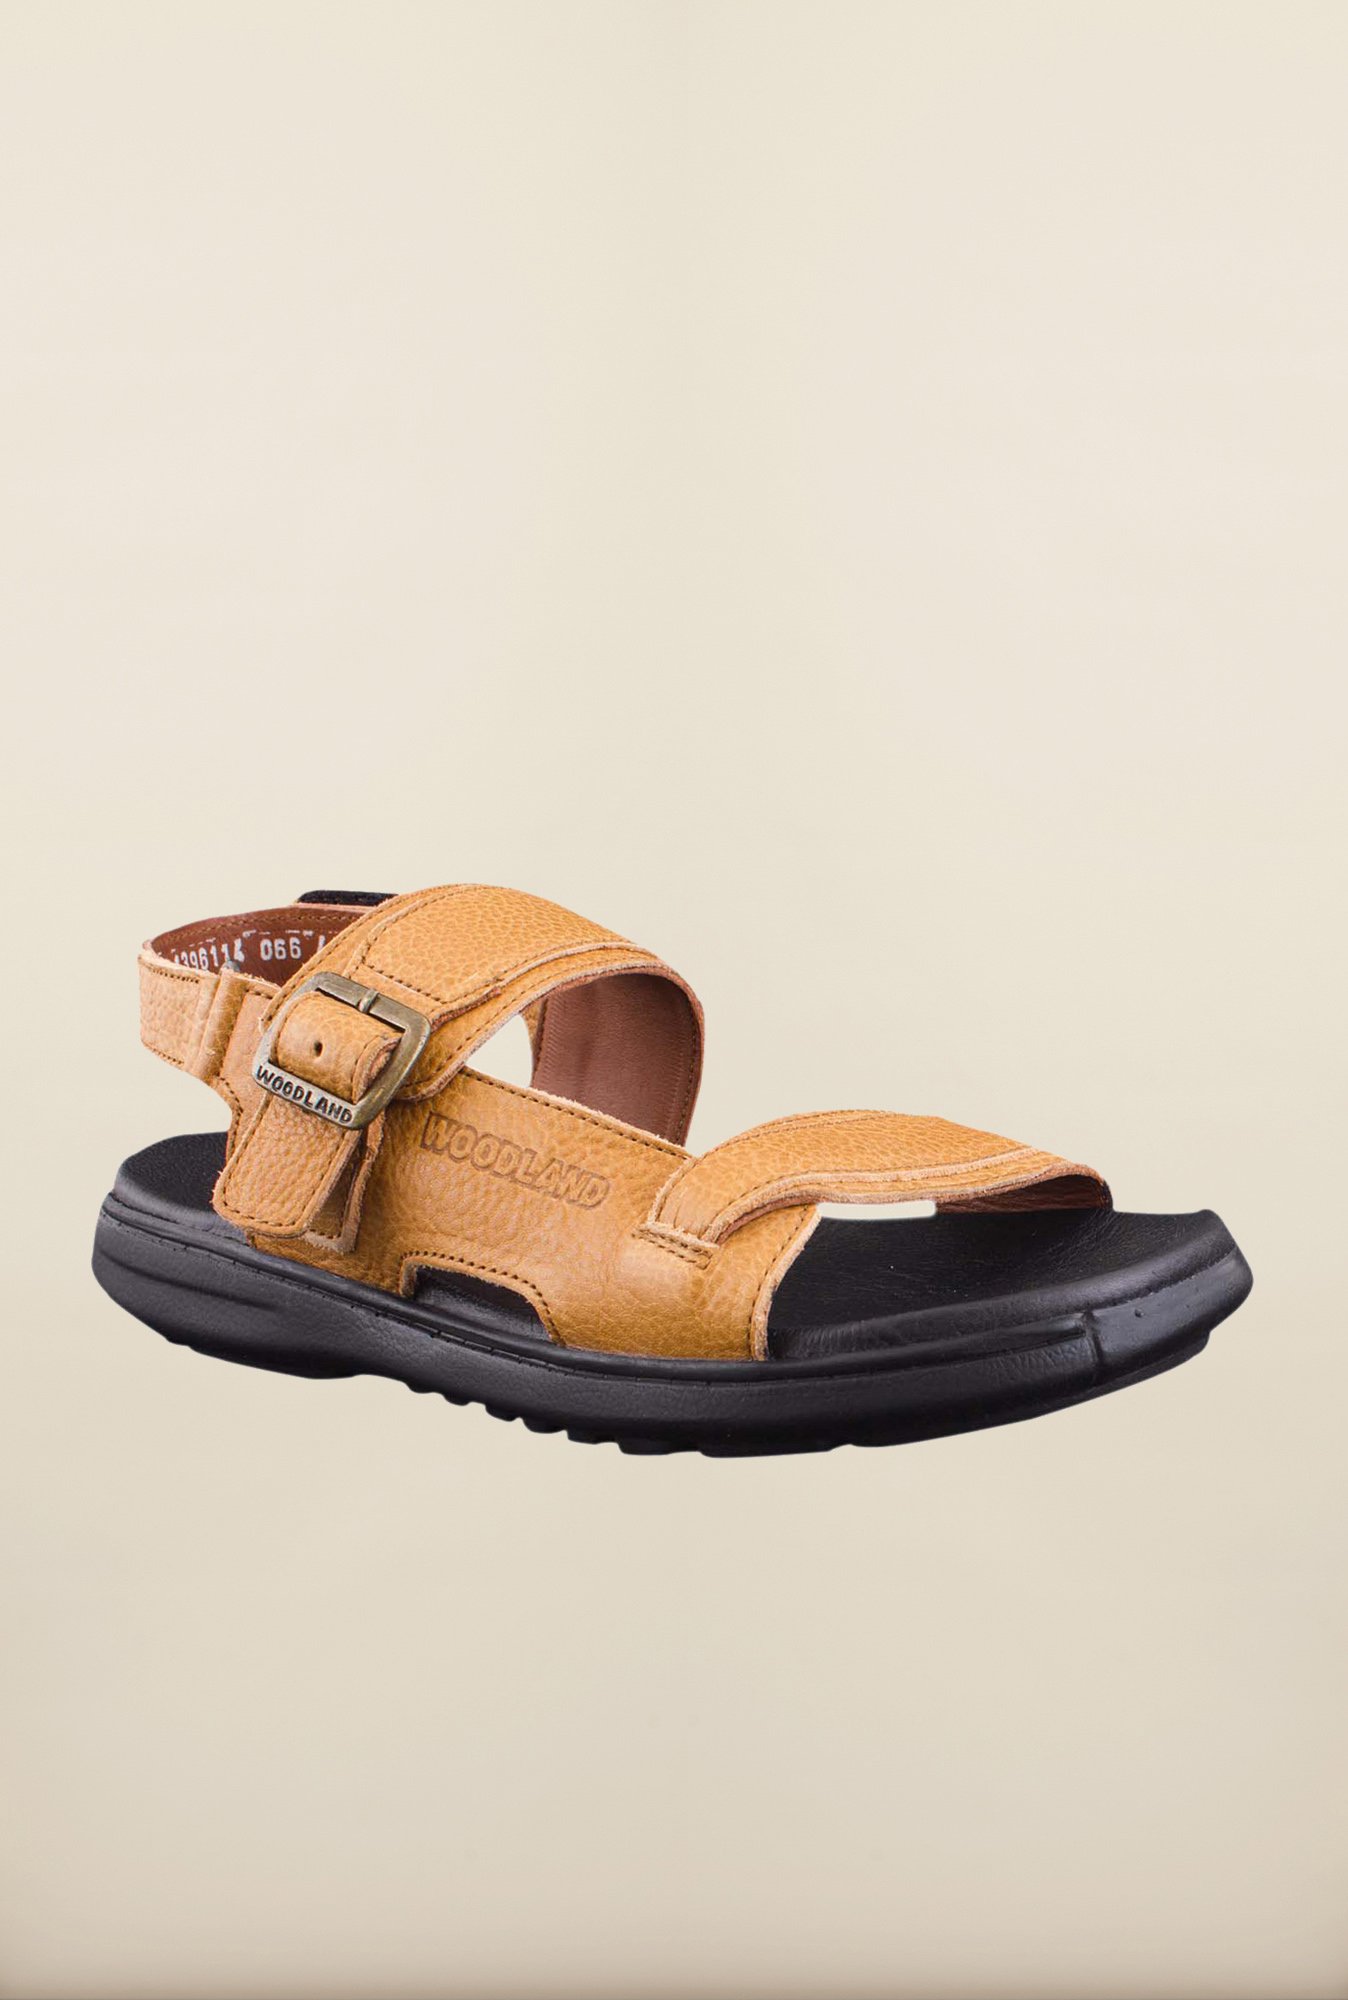 Buy Woodland Tan Back Strap Sandals 